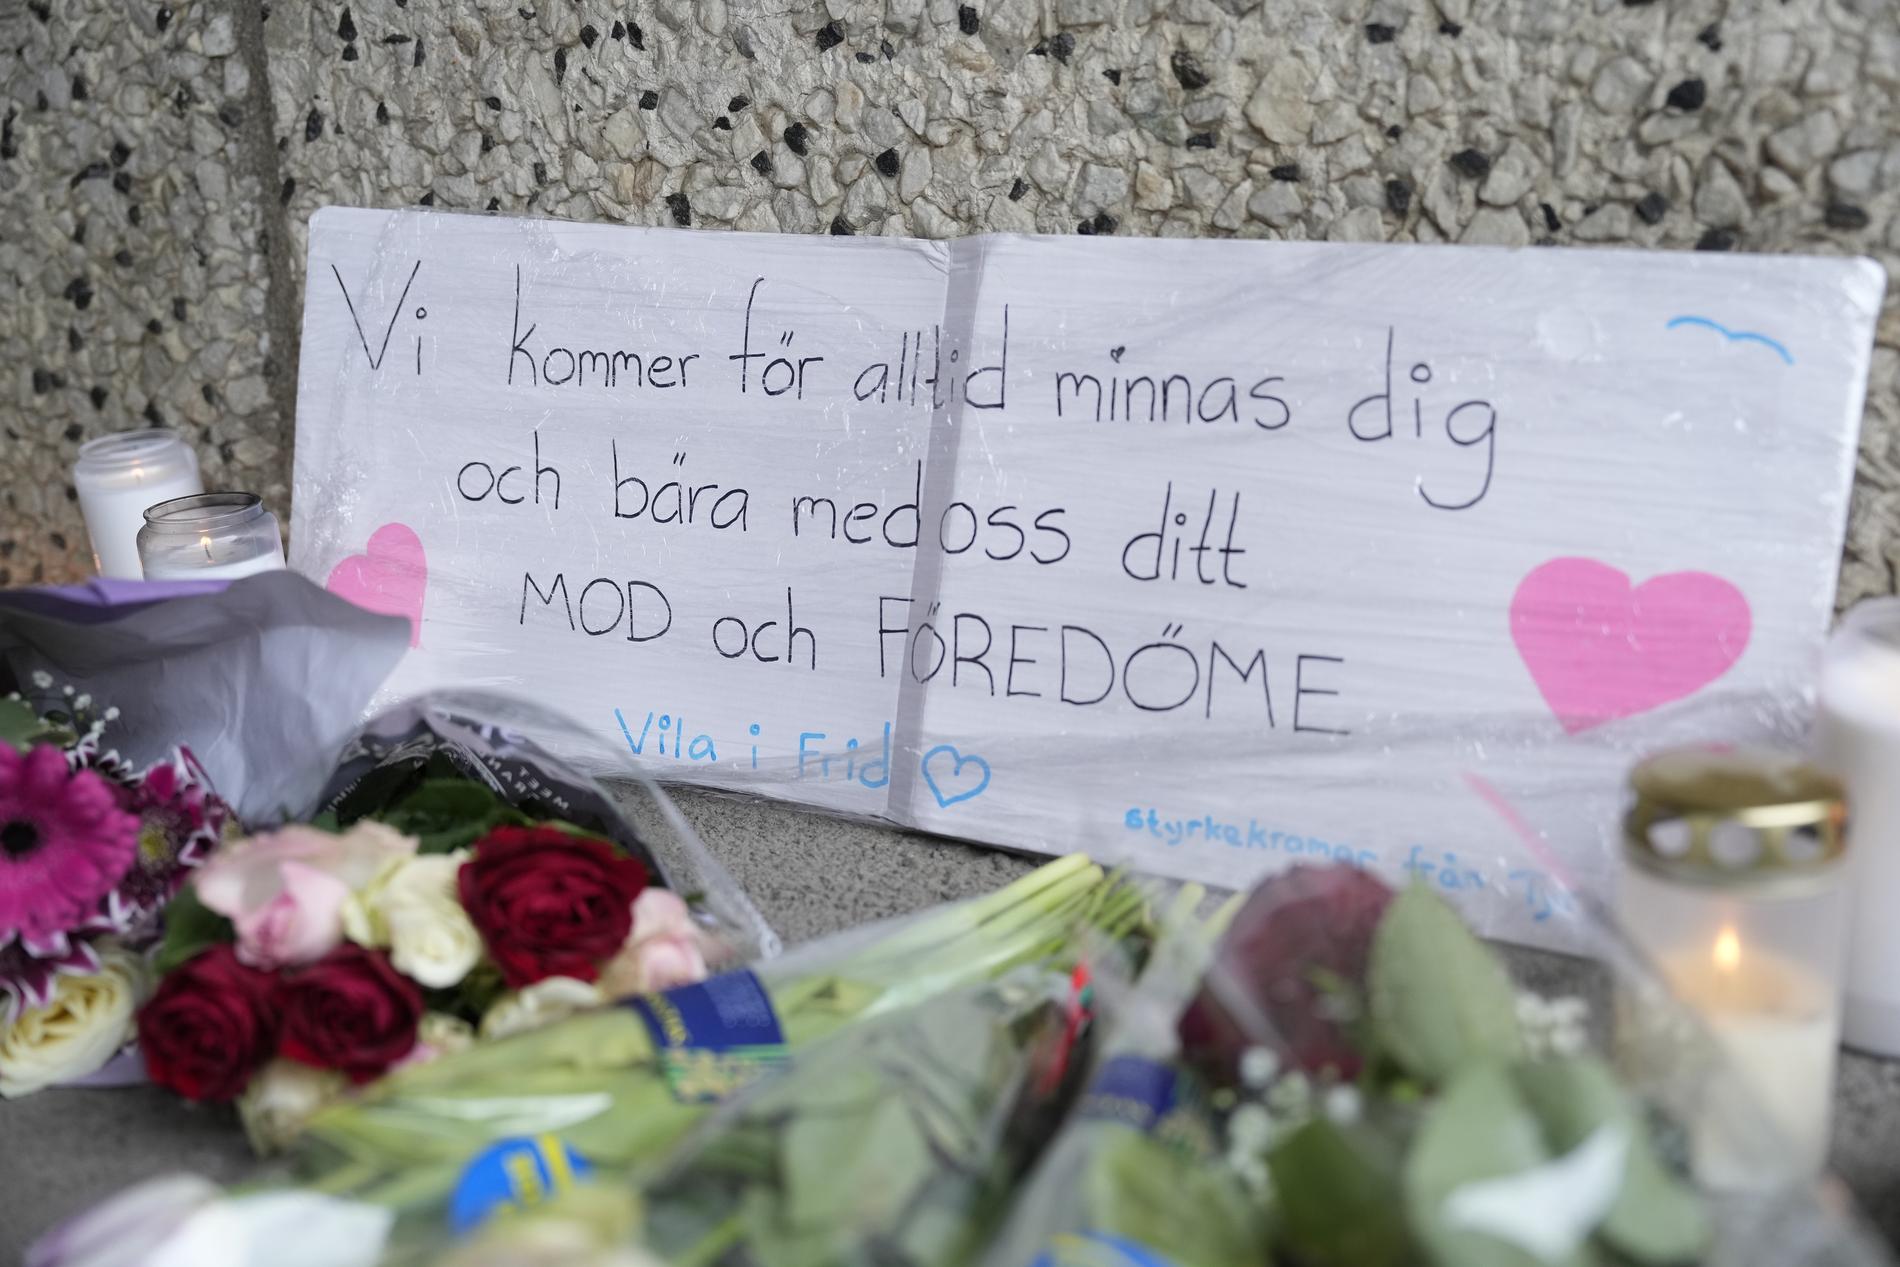 Blommor, gravljus och en skylt i gångtunneln i Skärholmen. På skylten står ”Vi kommer för alltid minnas dig och bära med oss ditt mod och föredöme. Vila i frid”